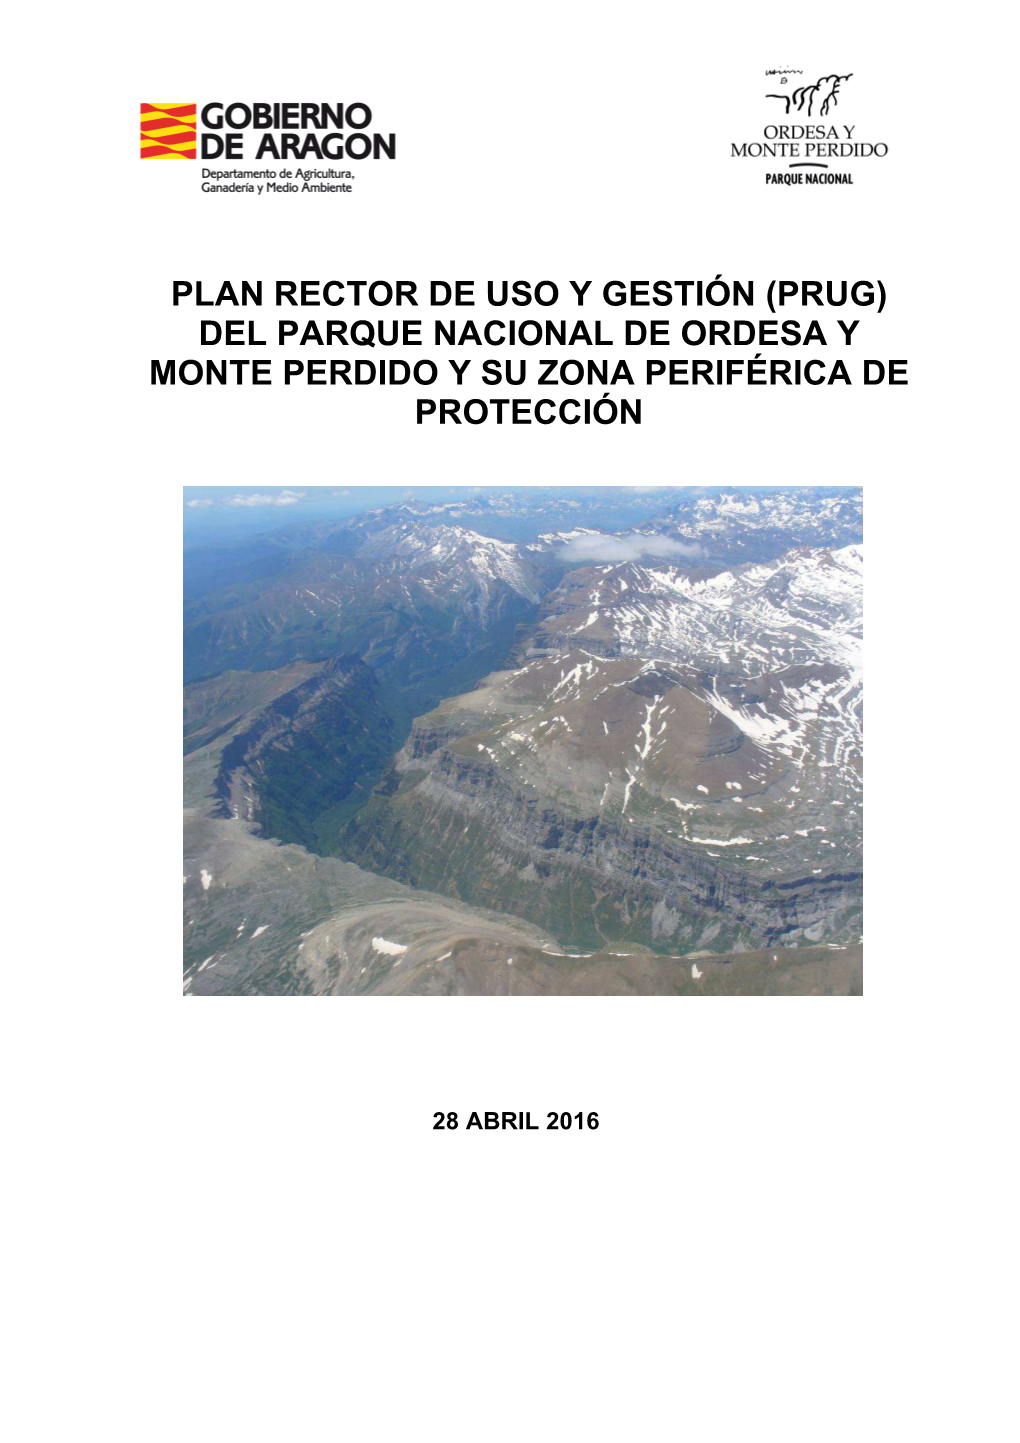 Plan Rector De Uso Y Gestión (Prug) Del Parque Nacional De Ordesa Y Monte Perdido Y Su Zona Periférica De Protección